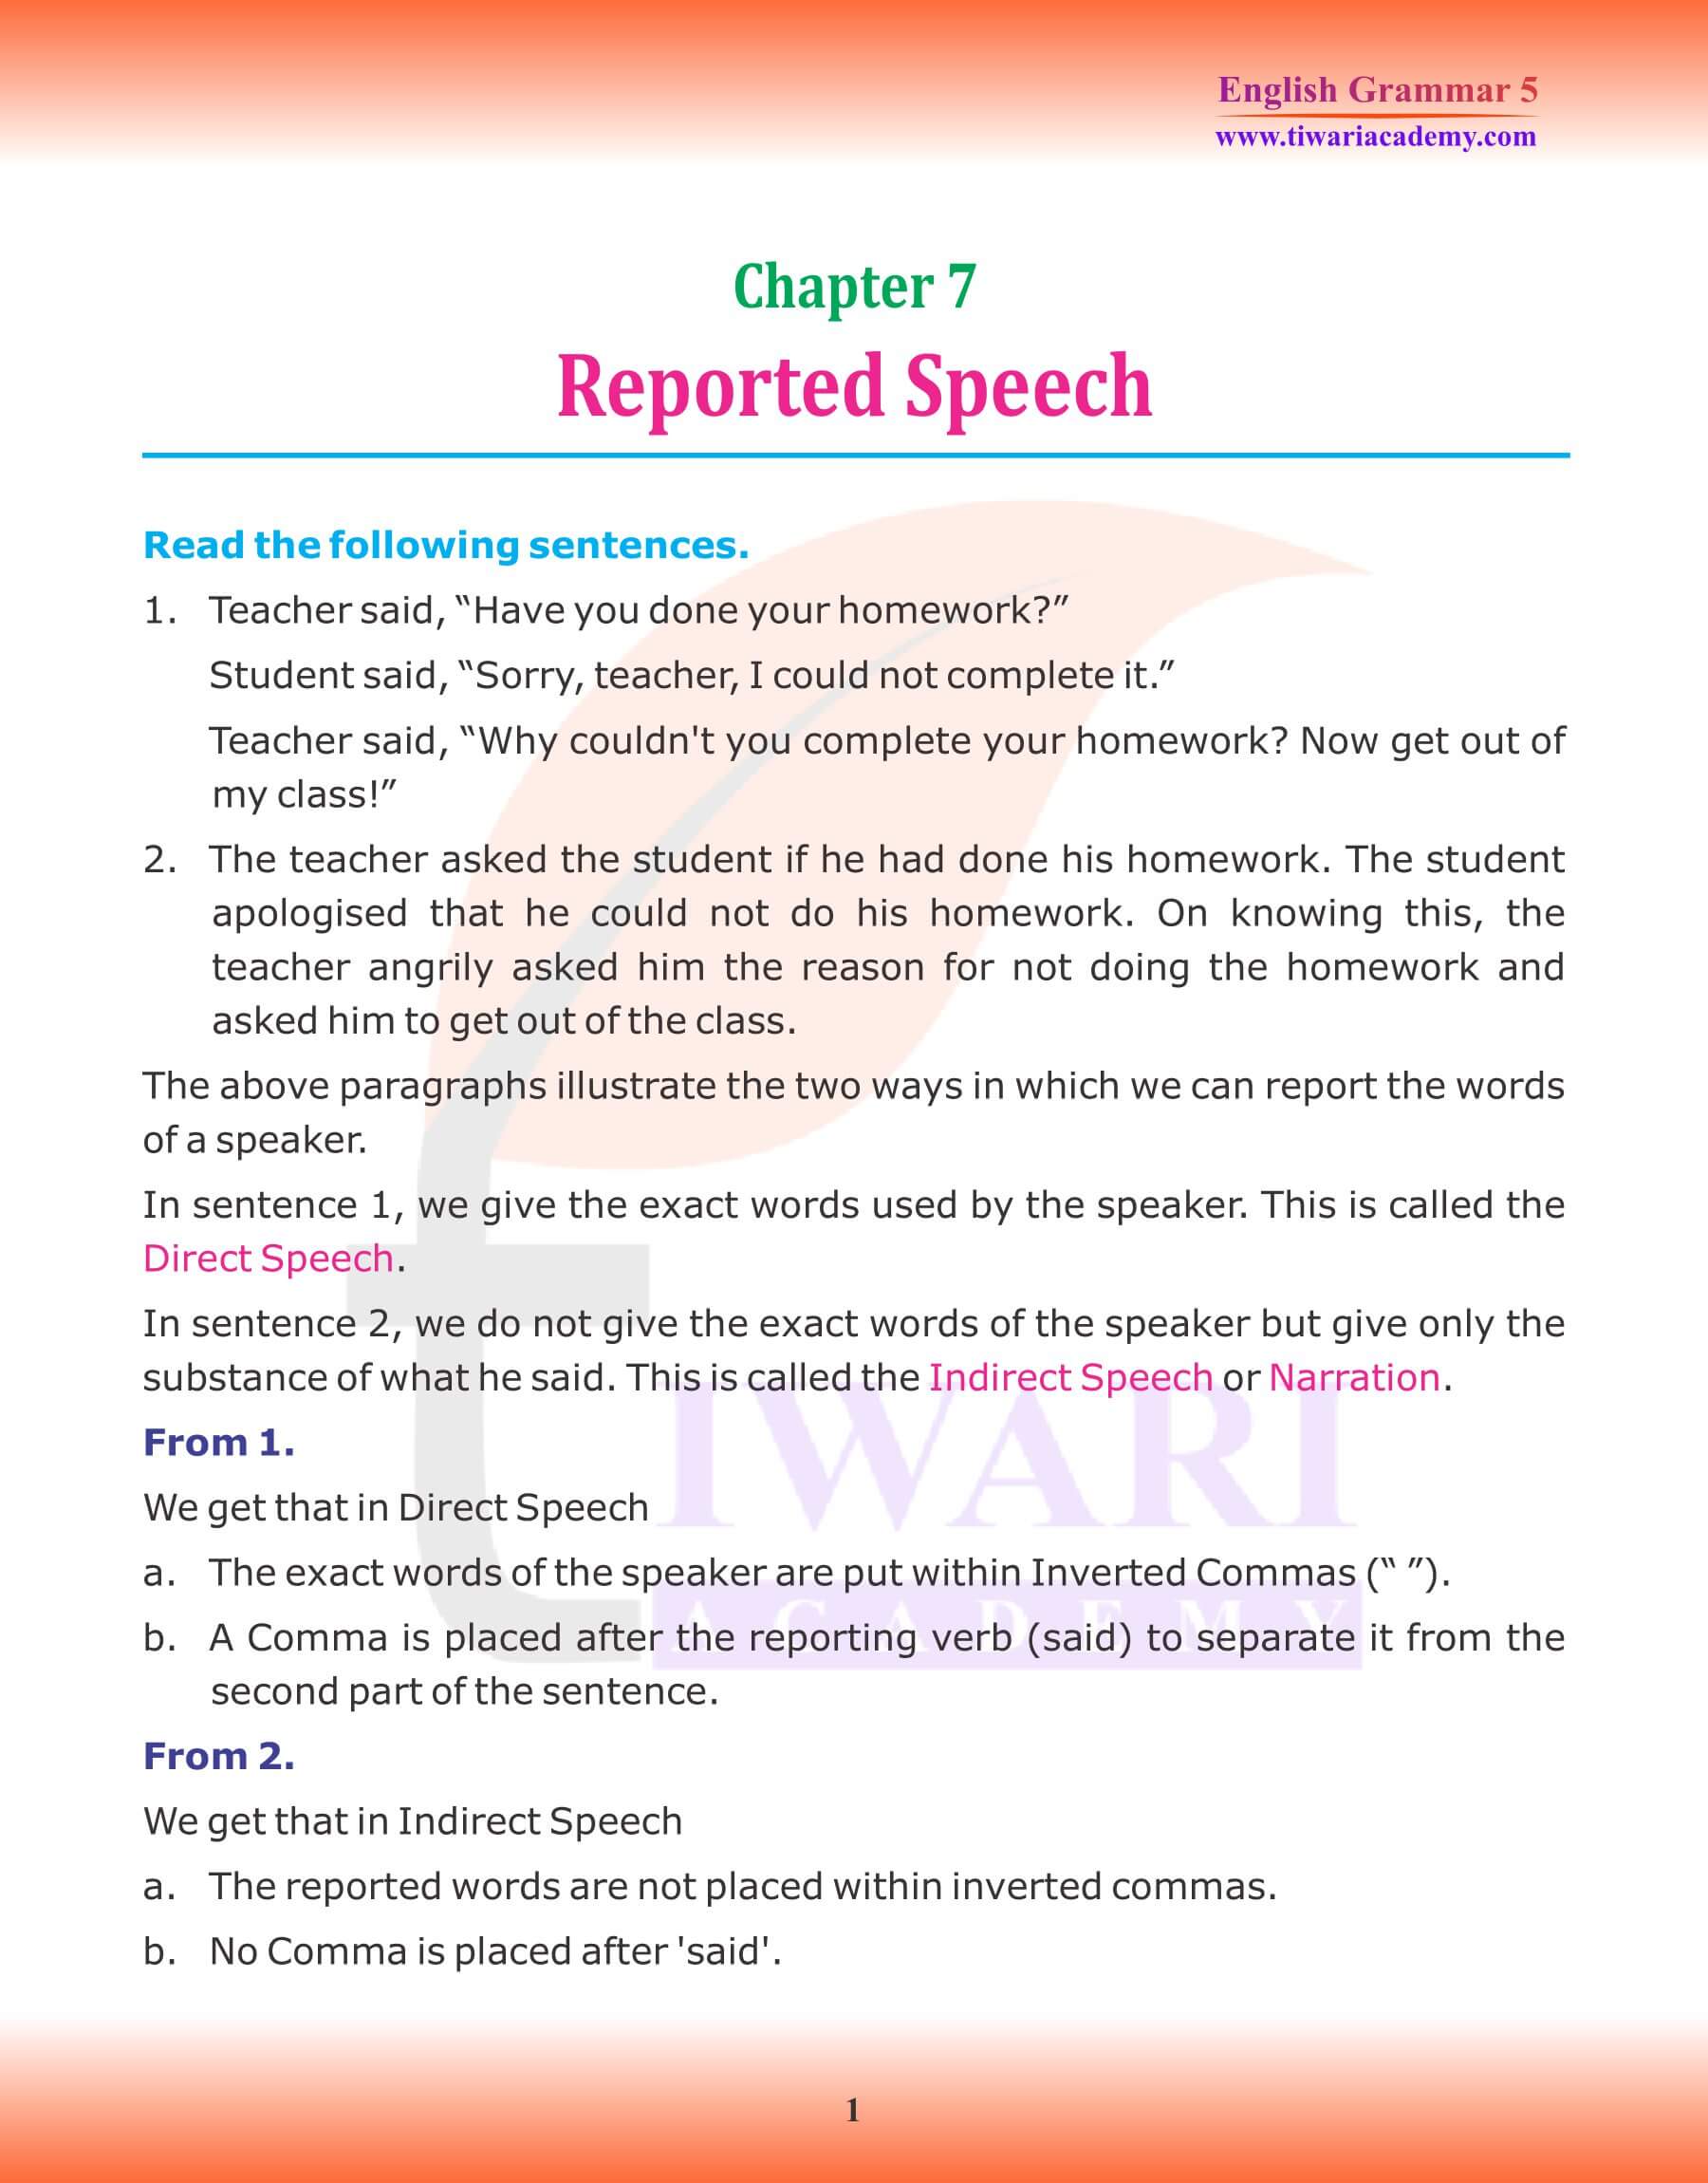 Class 5 Grammar Chapter 7 Reported Speech